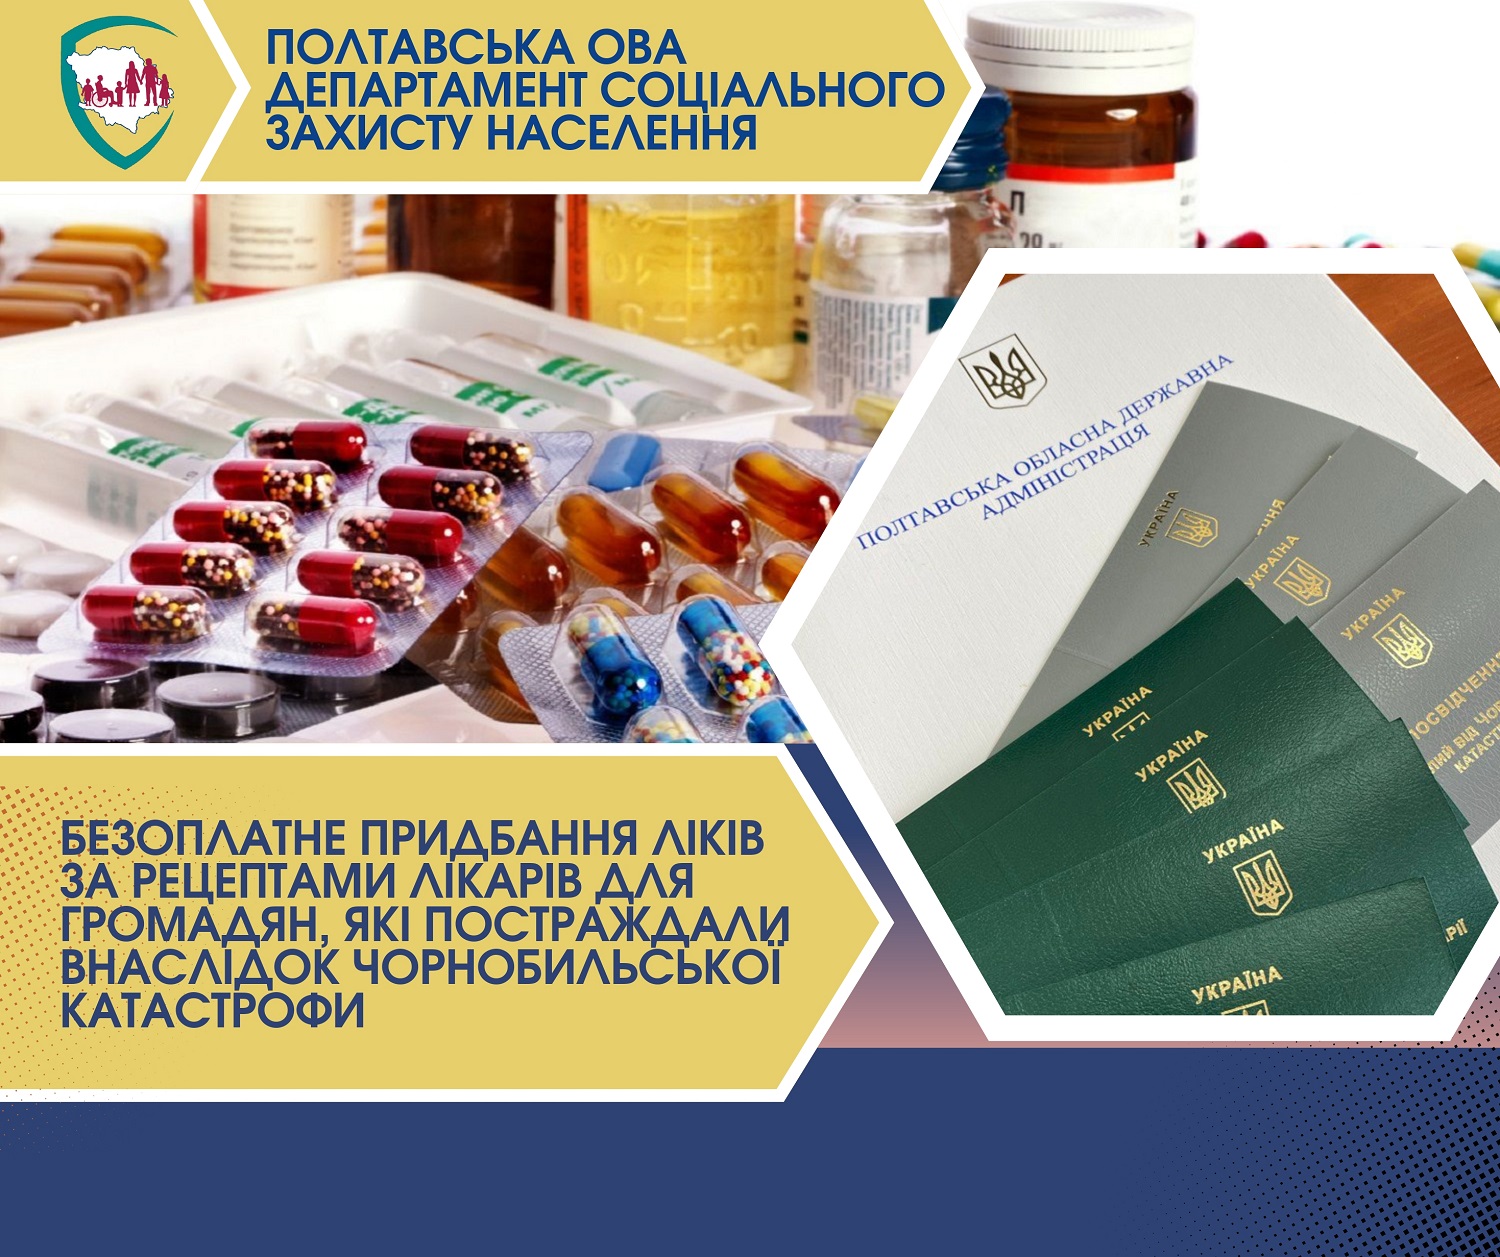 Безплатне придбання ліків за рецептами лікарів для громадян, які постраждали внаслідок Чорнобильської катастрофи